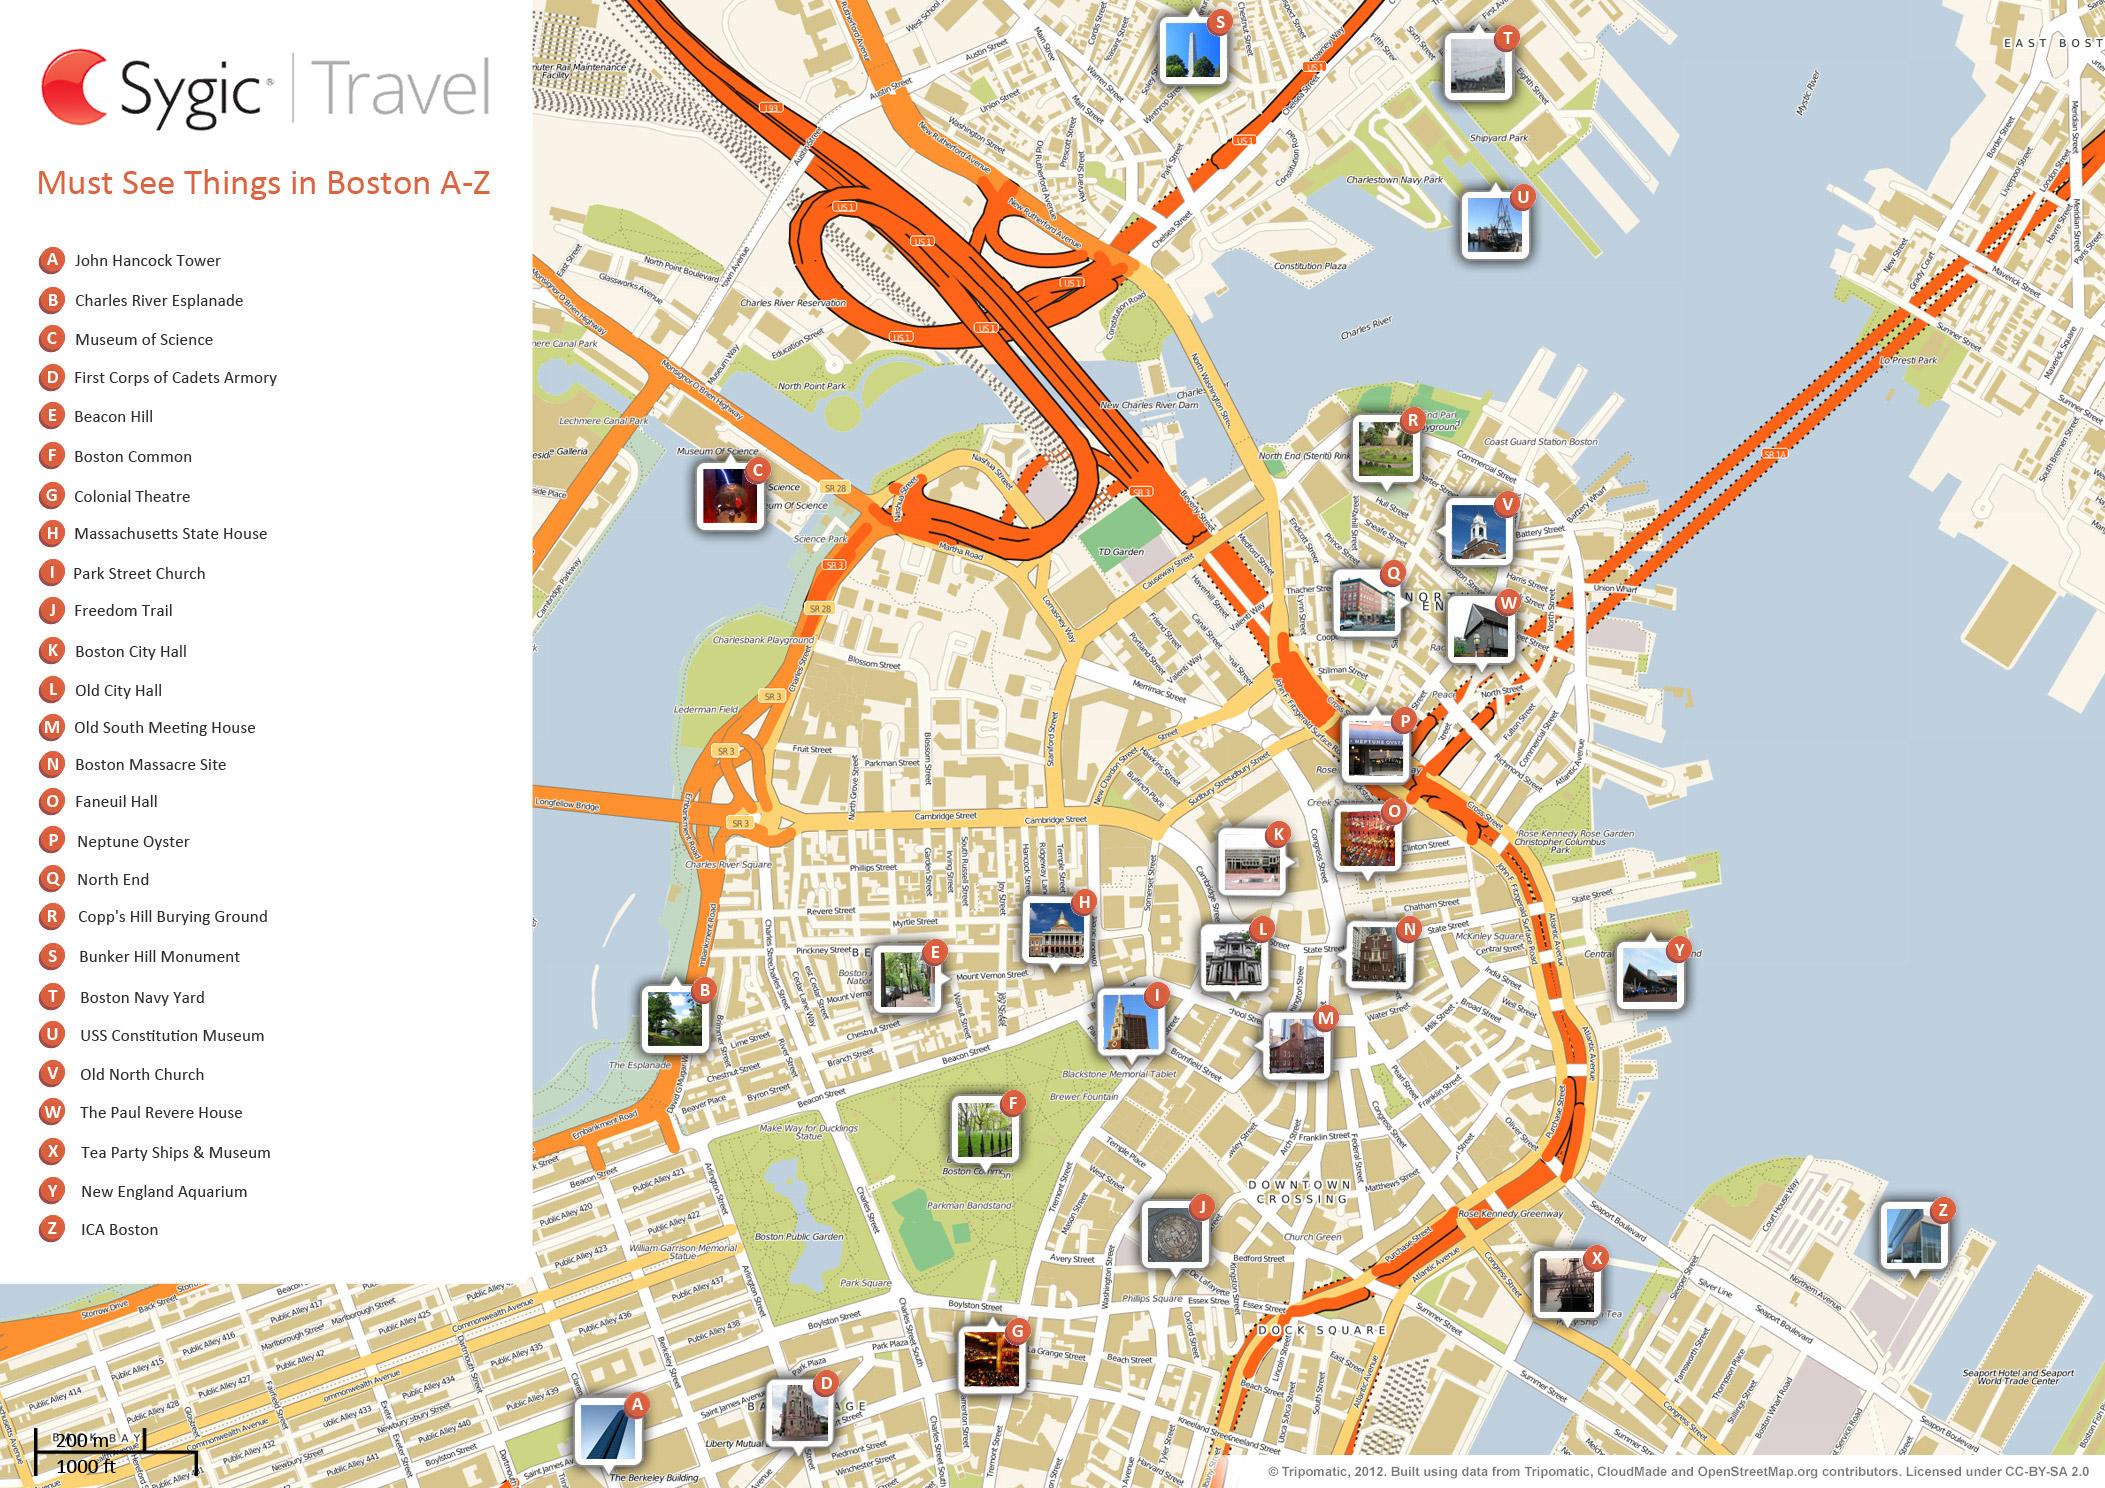 mapa-tur-stico-de-boston-atracciones-y-monumentos-de-boston